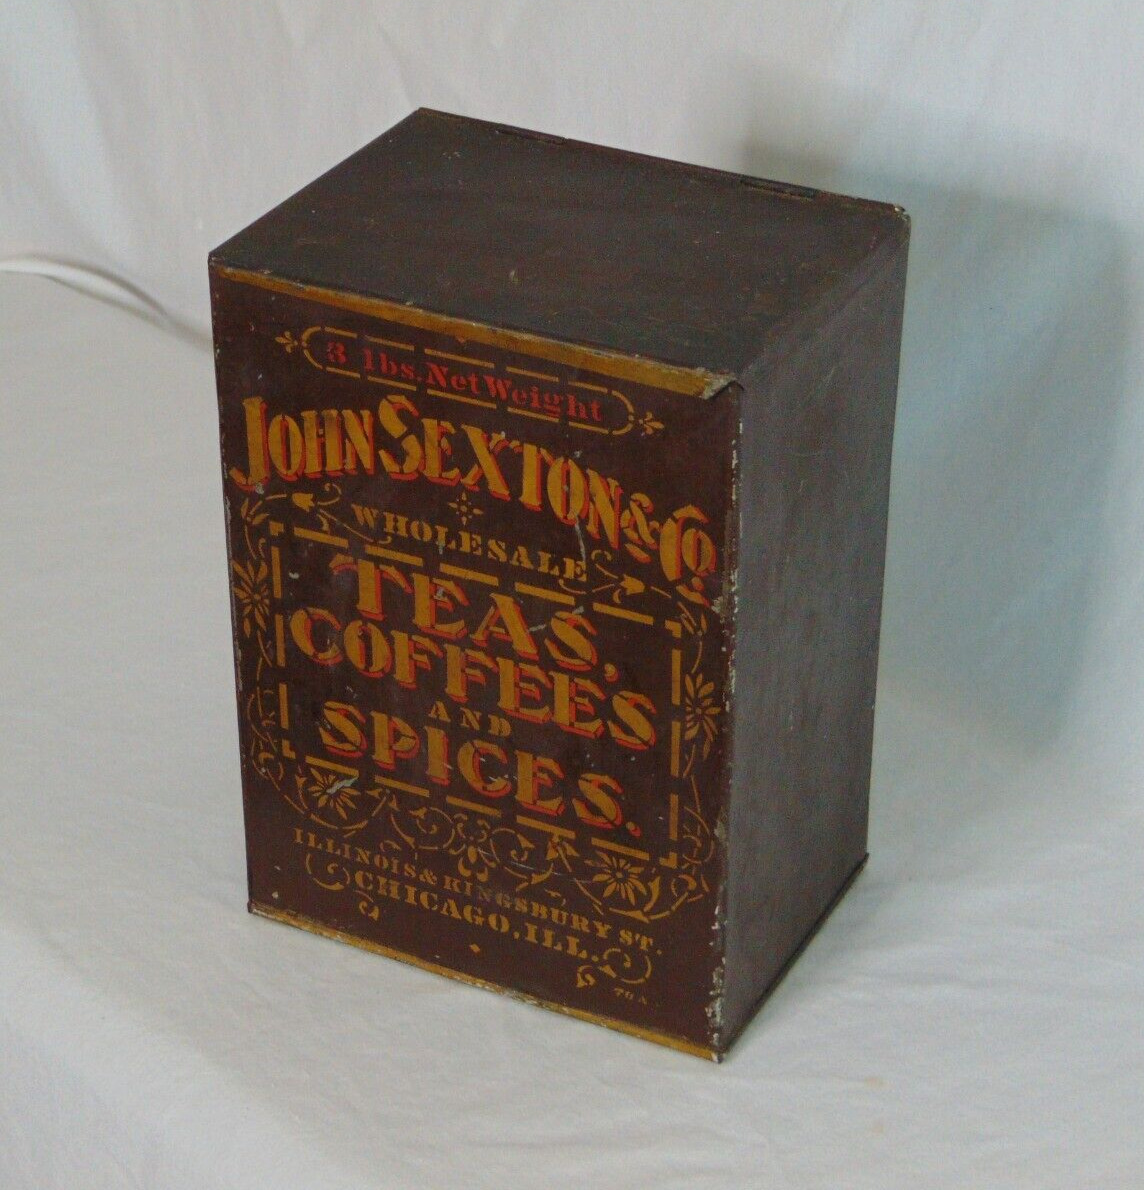 John Sexton & Co. Antique Advertising Tin Teas Coffees And Spice 3Lbs Drug Store